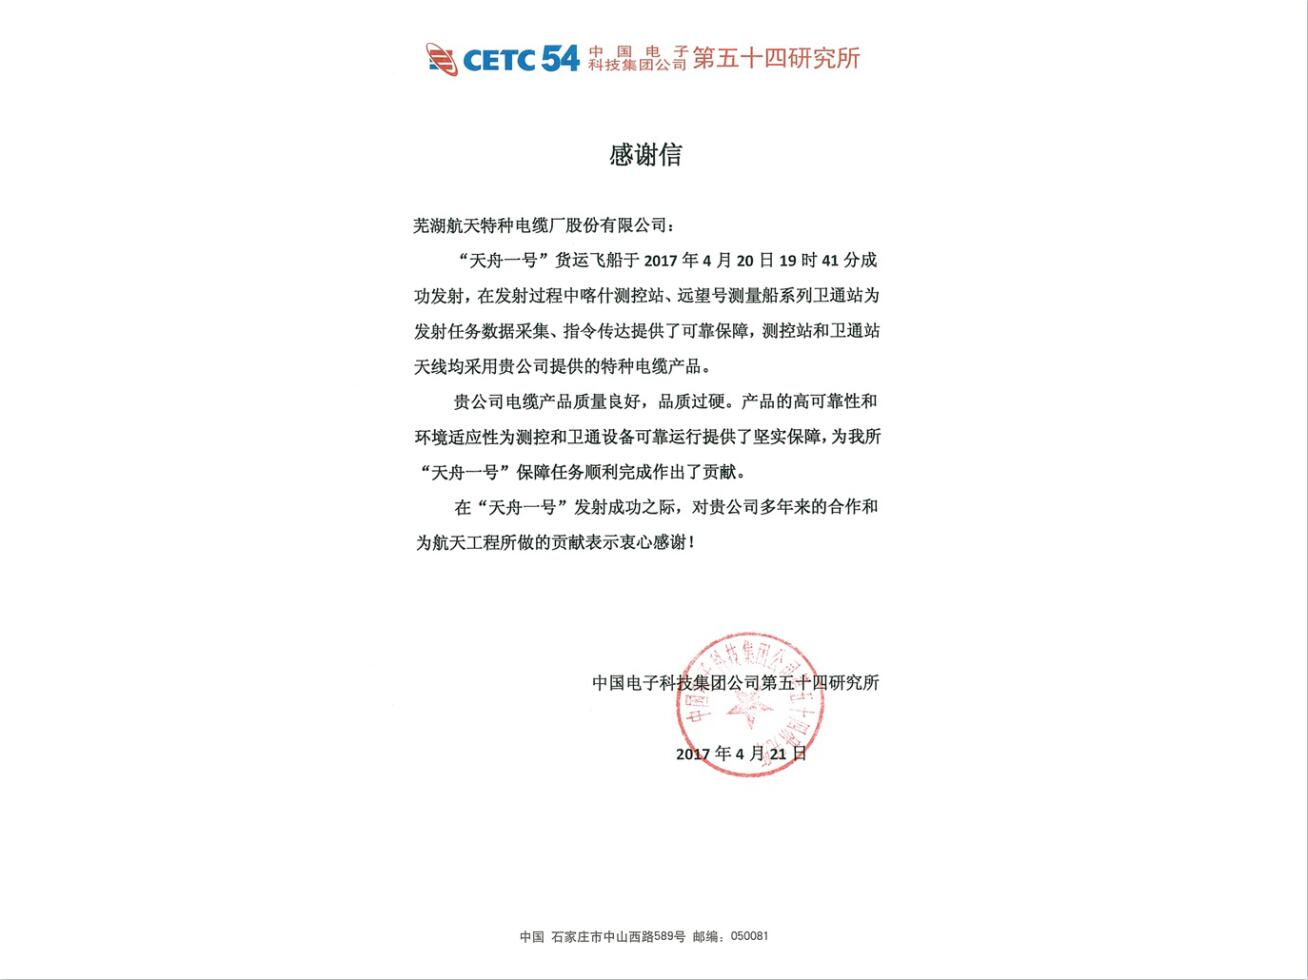 中国电子科技集团公司第五十四研究所“天舟一号”的感谢信(1)-1.jpg